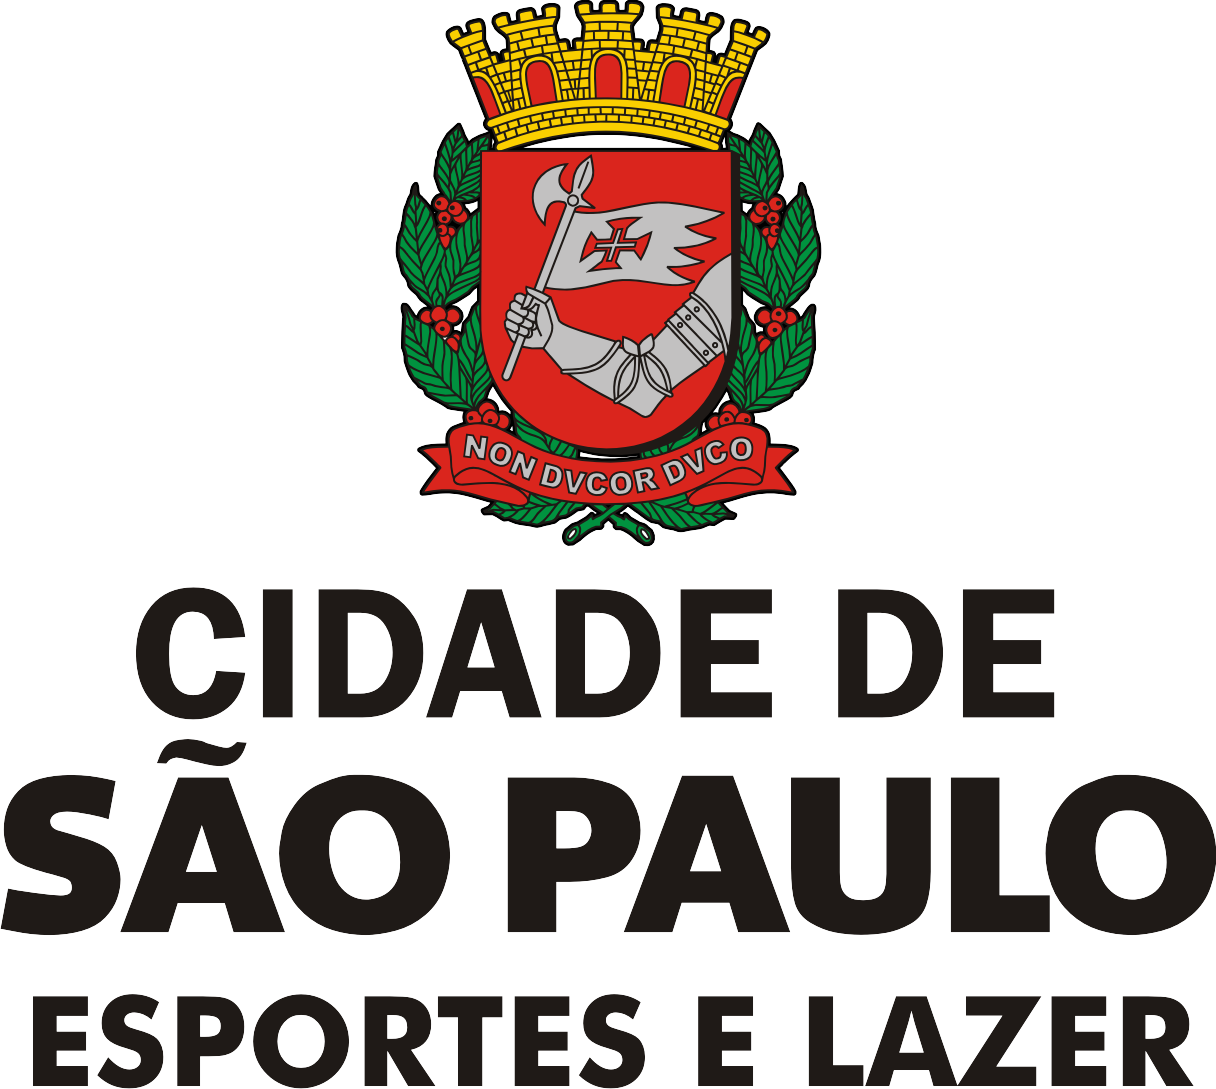 Joga SP - Campeonatos, Secretaria Municipal de Esportes e Lazer